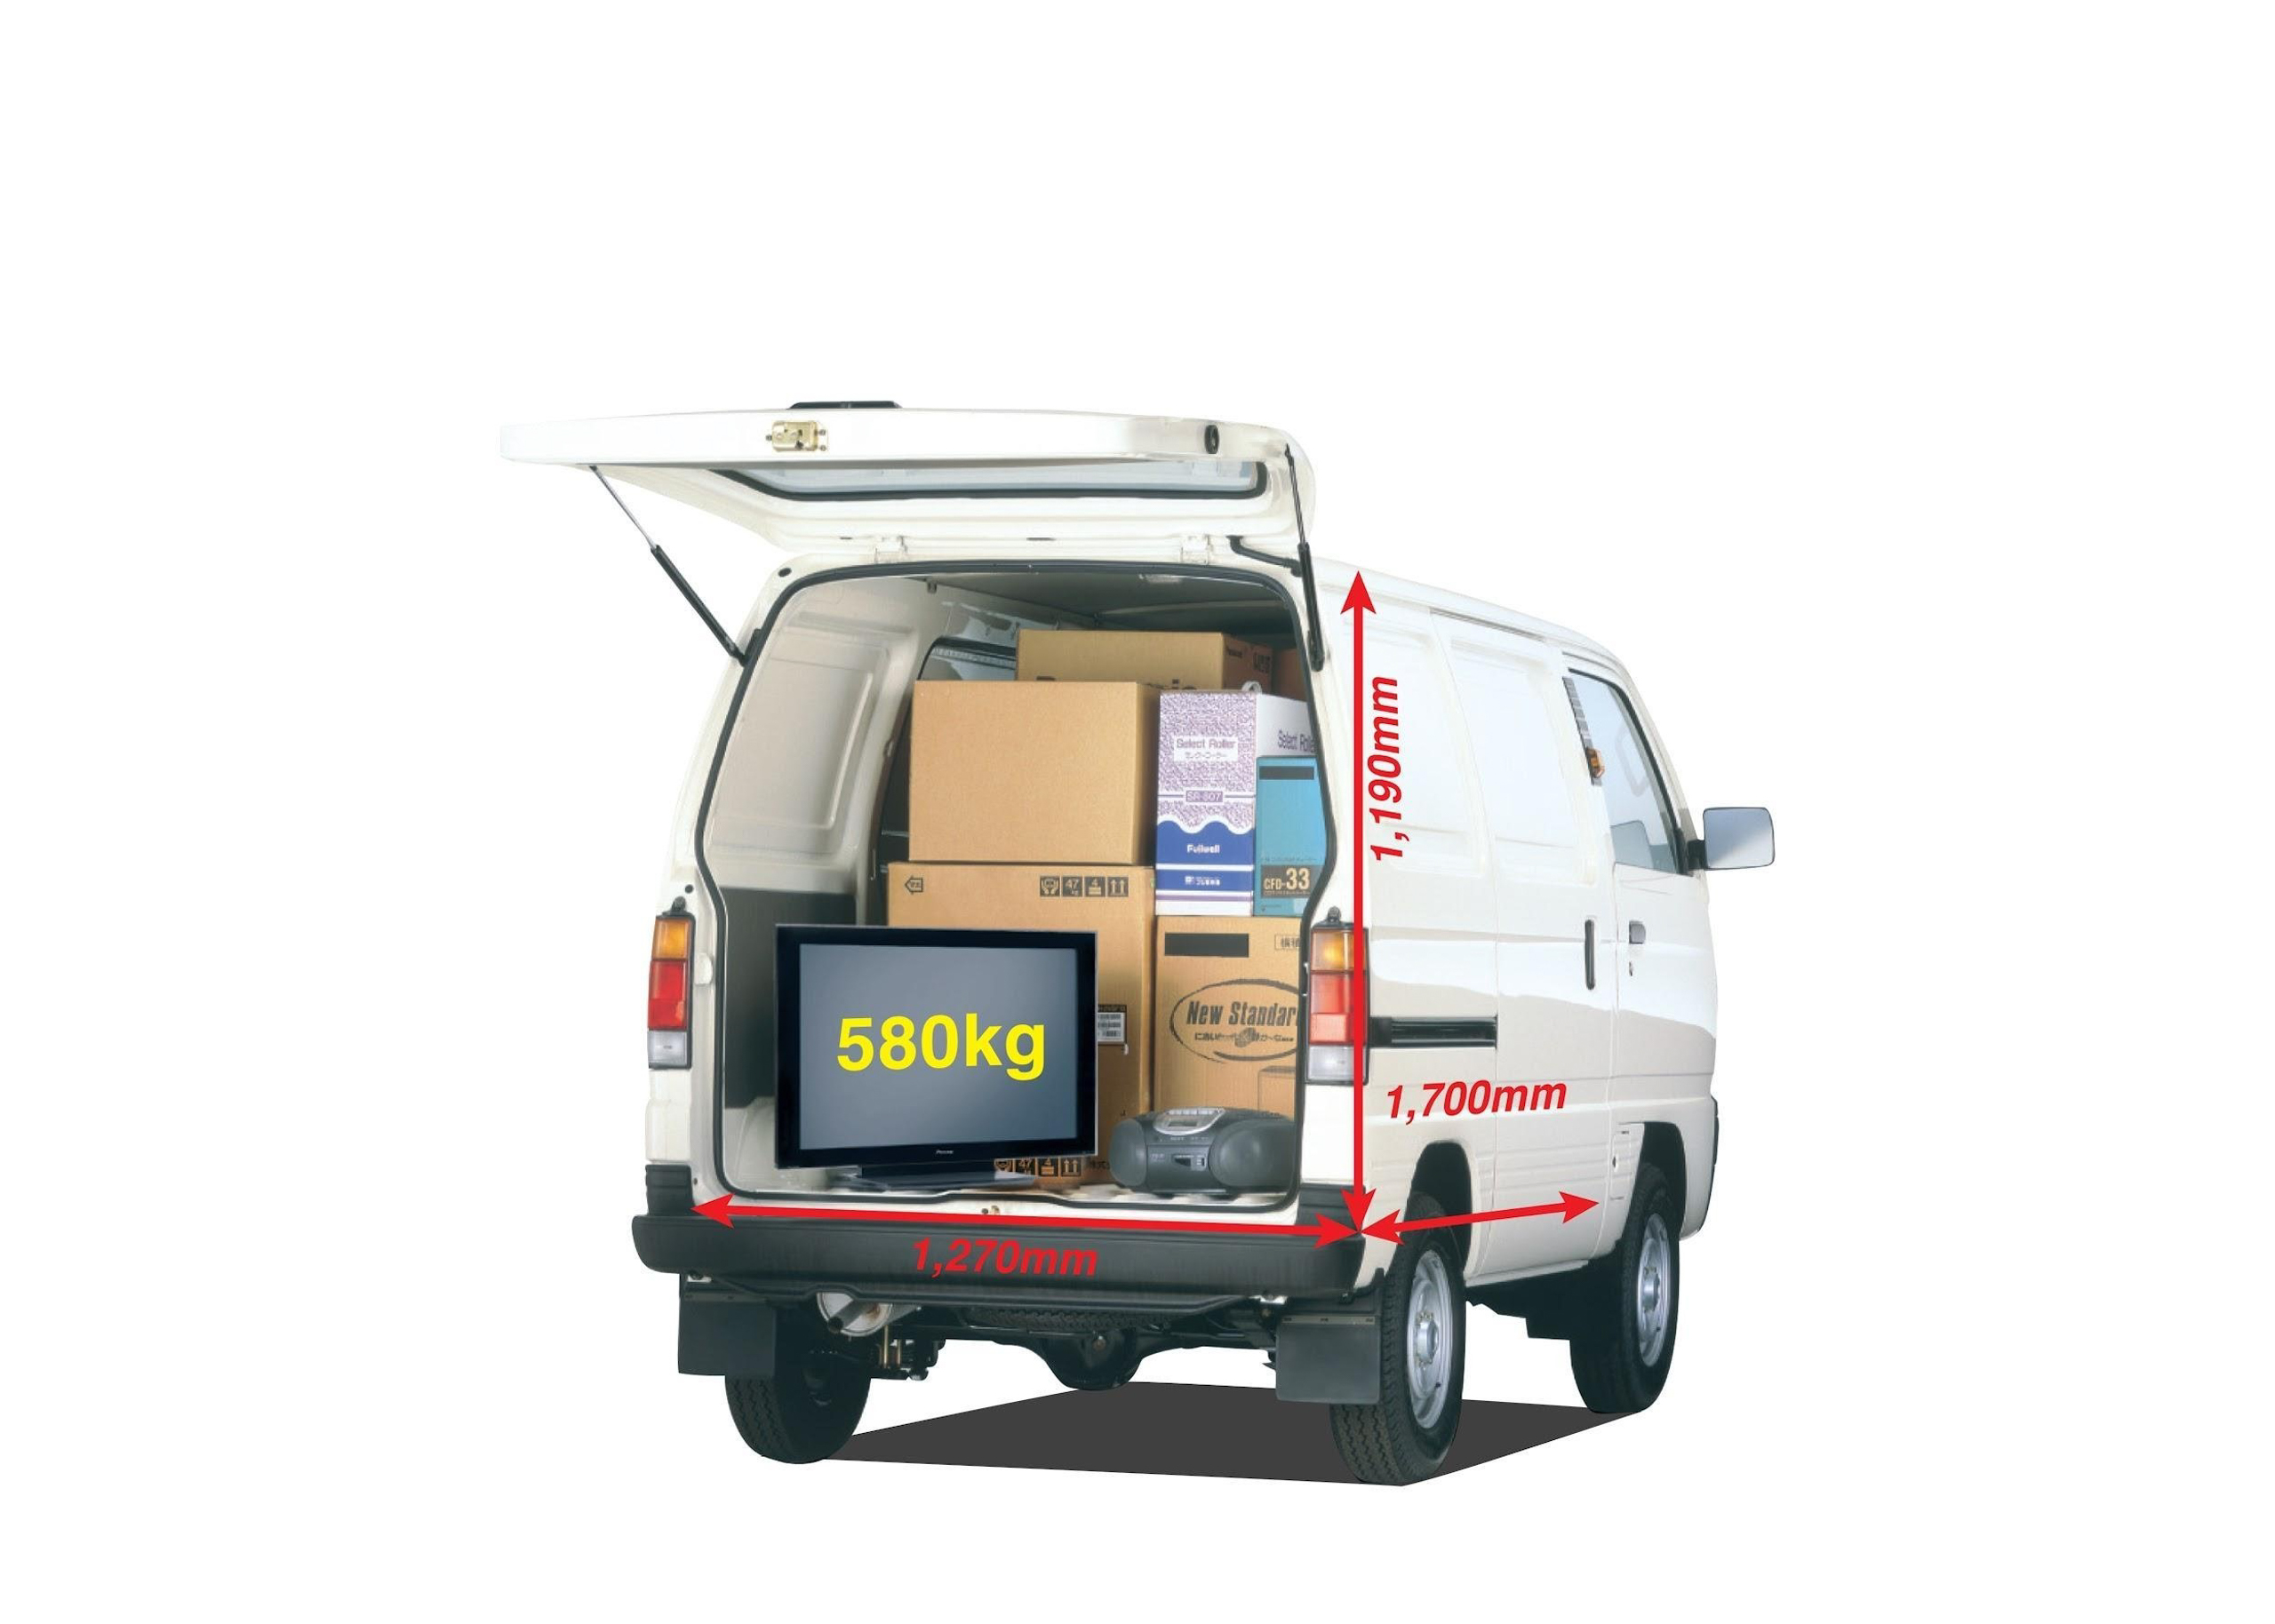 Suzuki tập trung sản xuất nội địa Việt Nam với các mẫu xe tải chất lượng